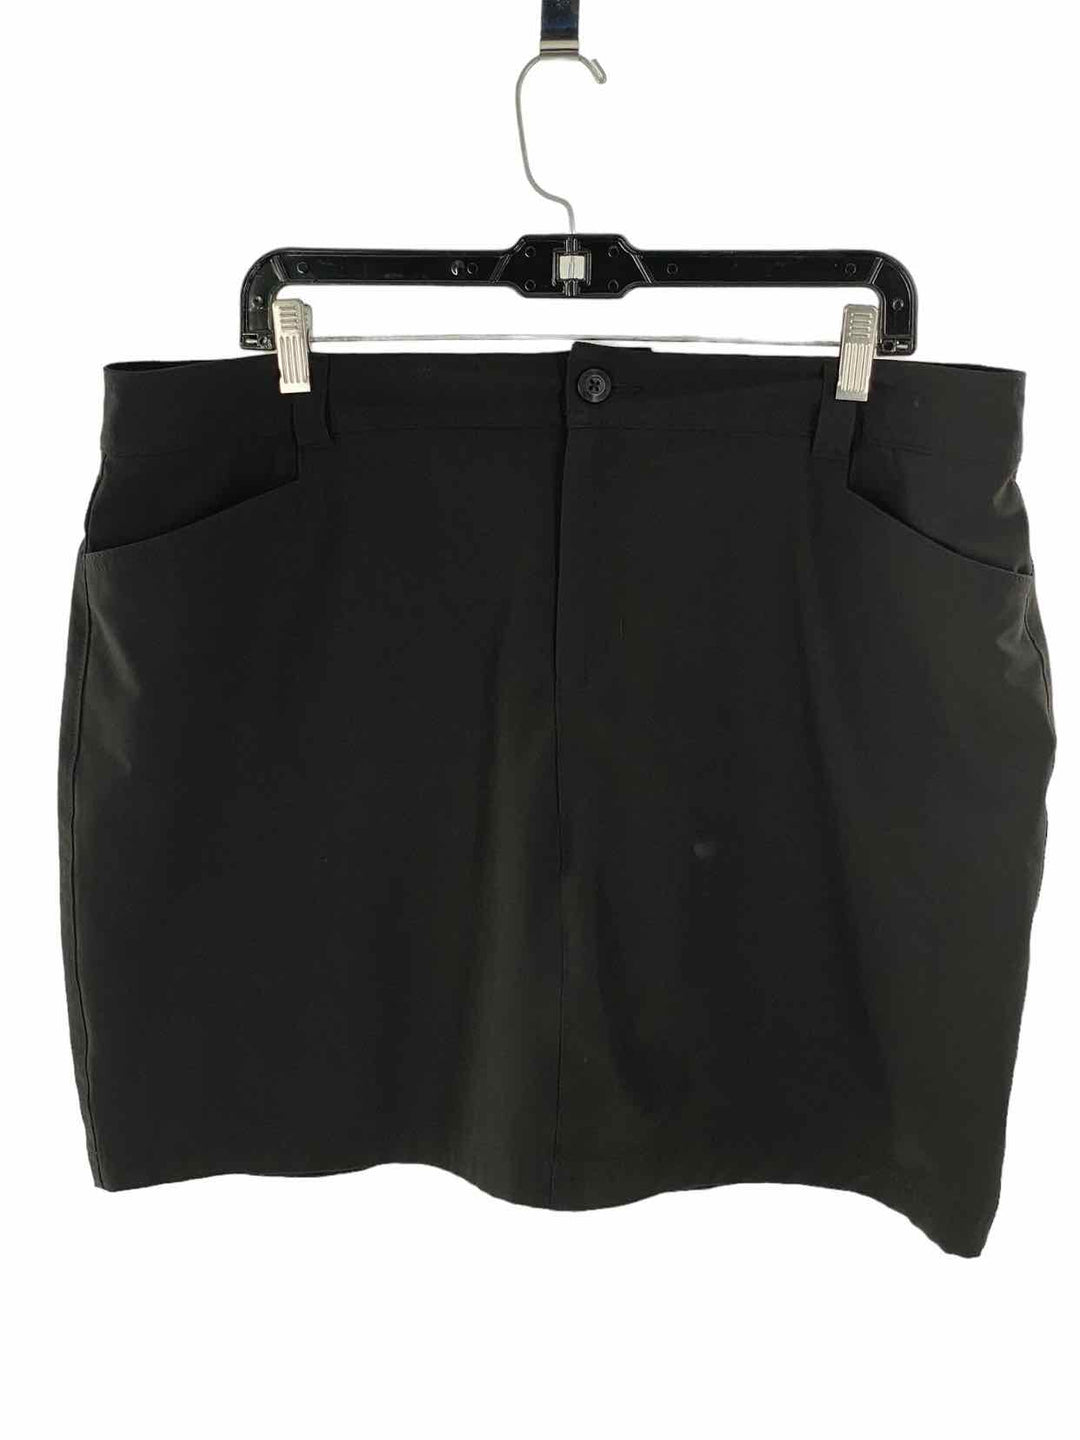 Eddie Bauer Size 16 Black Skirt